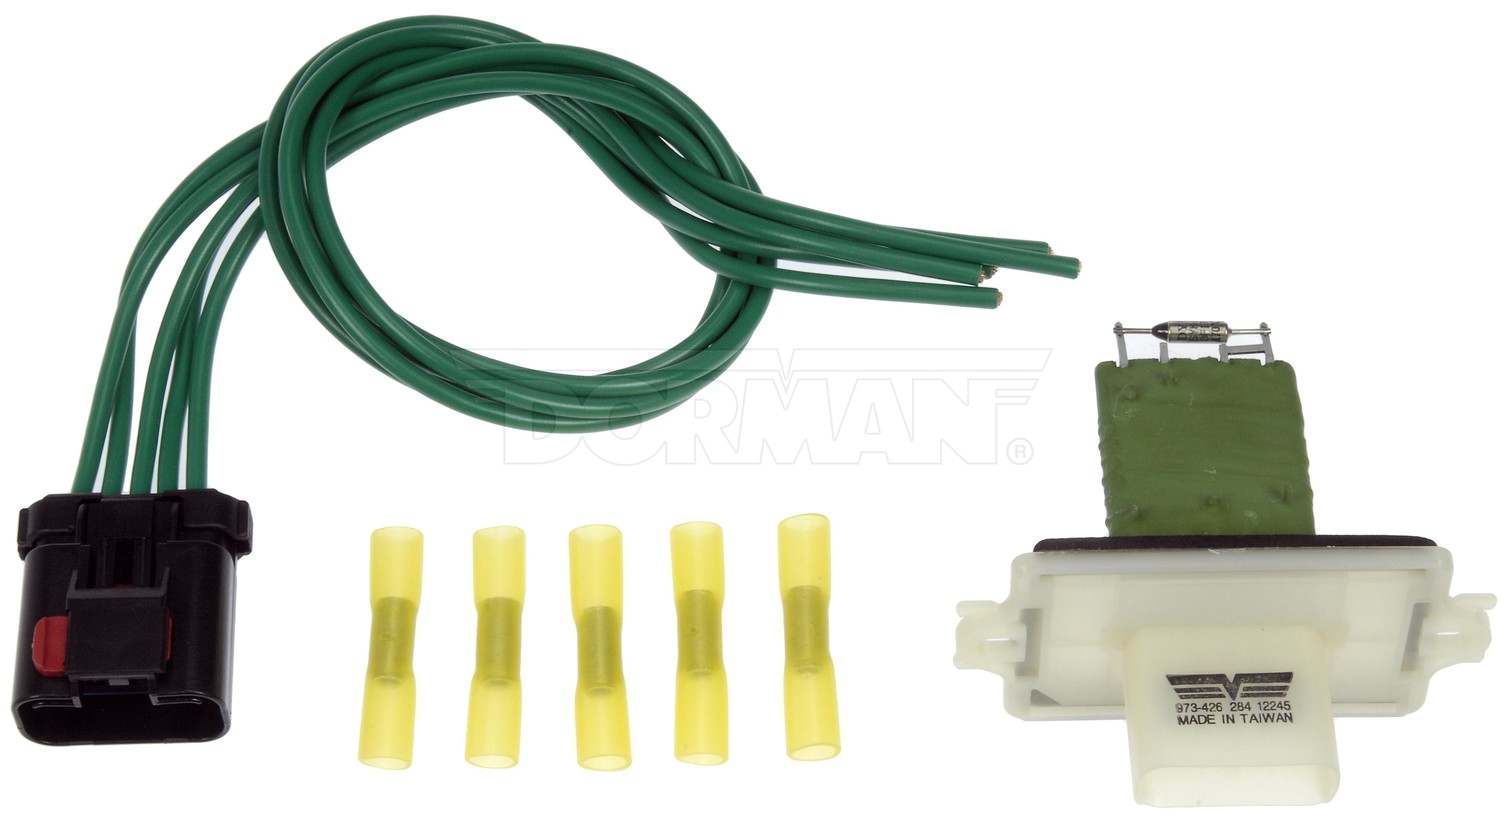 DORMAN OE SOLUTIONS - HVAC Blower Motor Resistor Kit - DRE 973-426